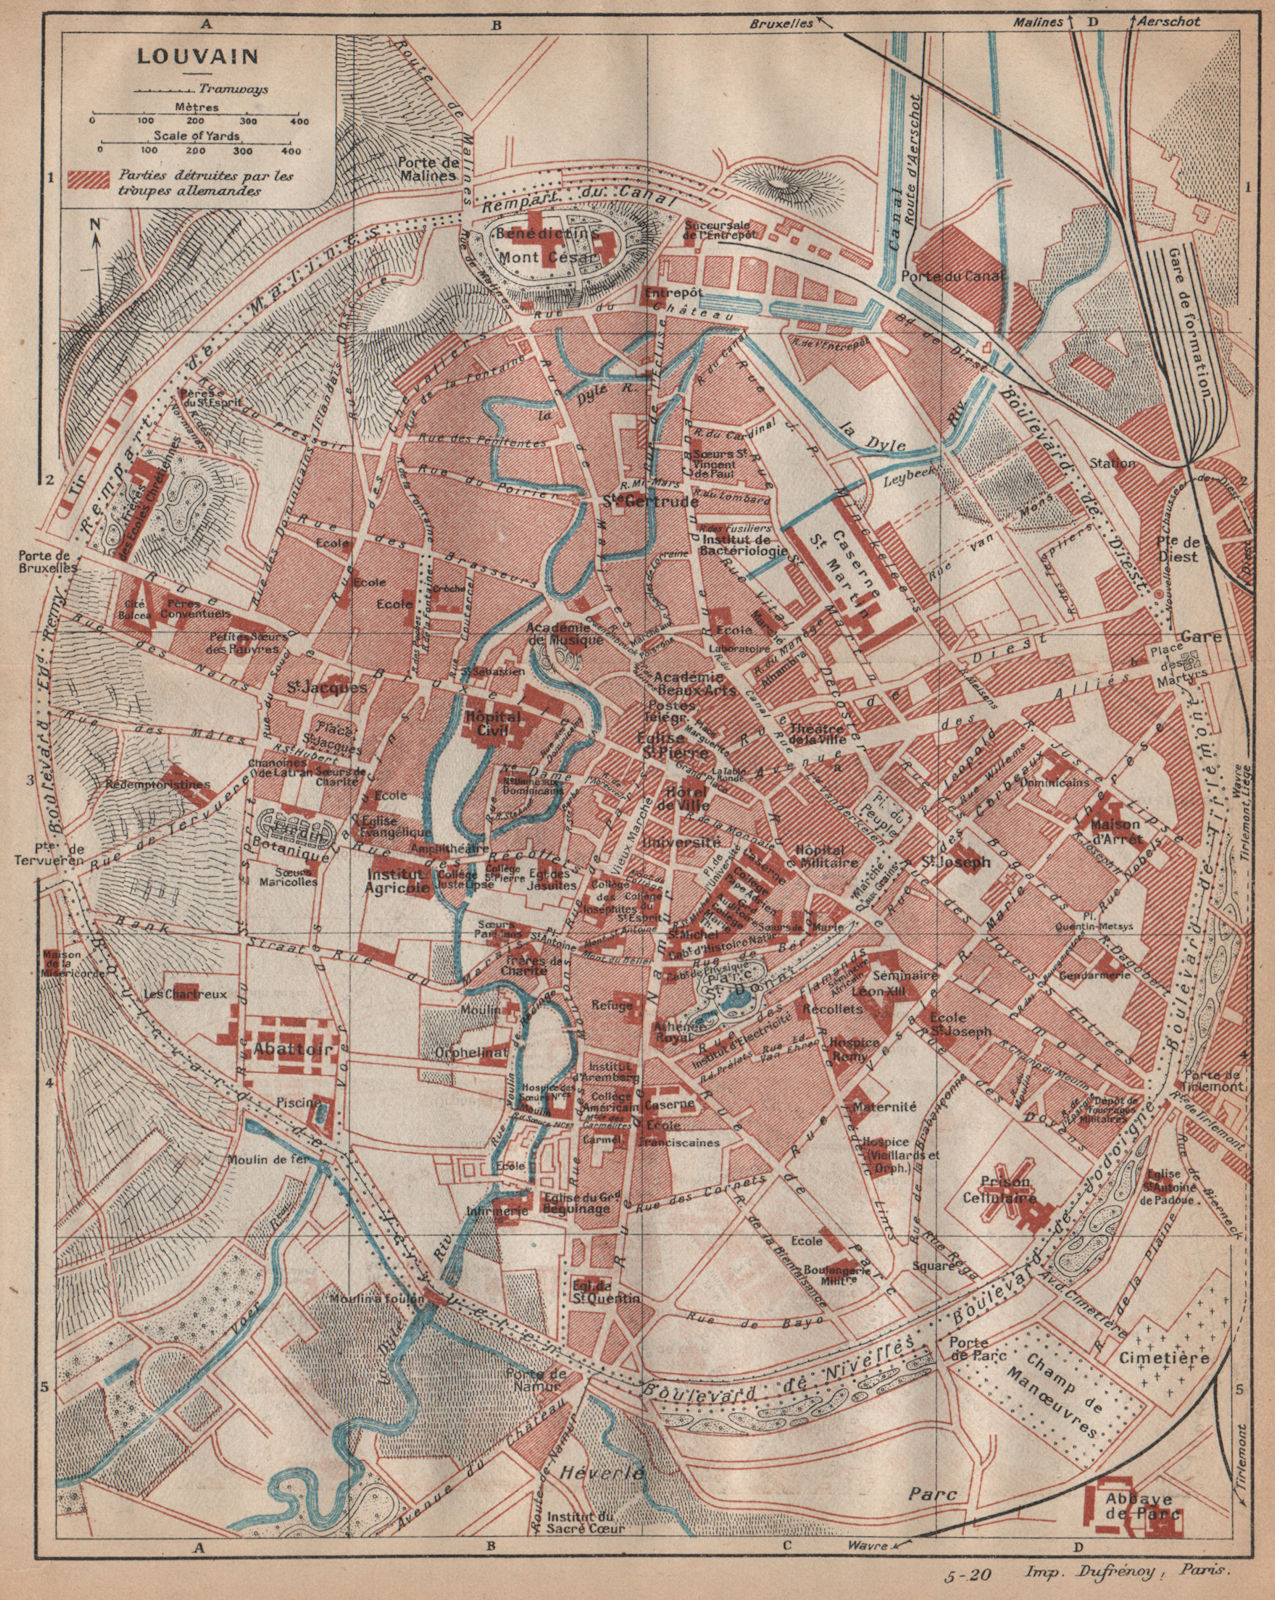 LOUVAIN (LEUVEN) . Vintage town city map plan. Belgium 1920 old antique